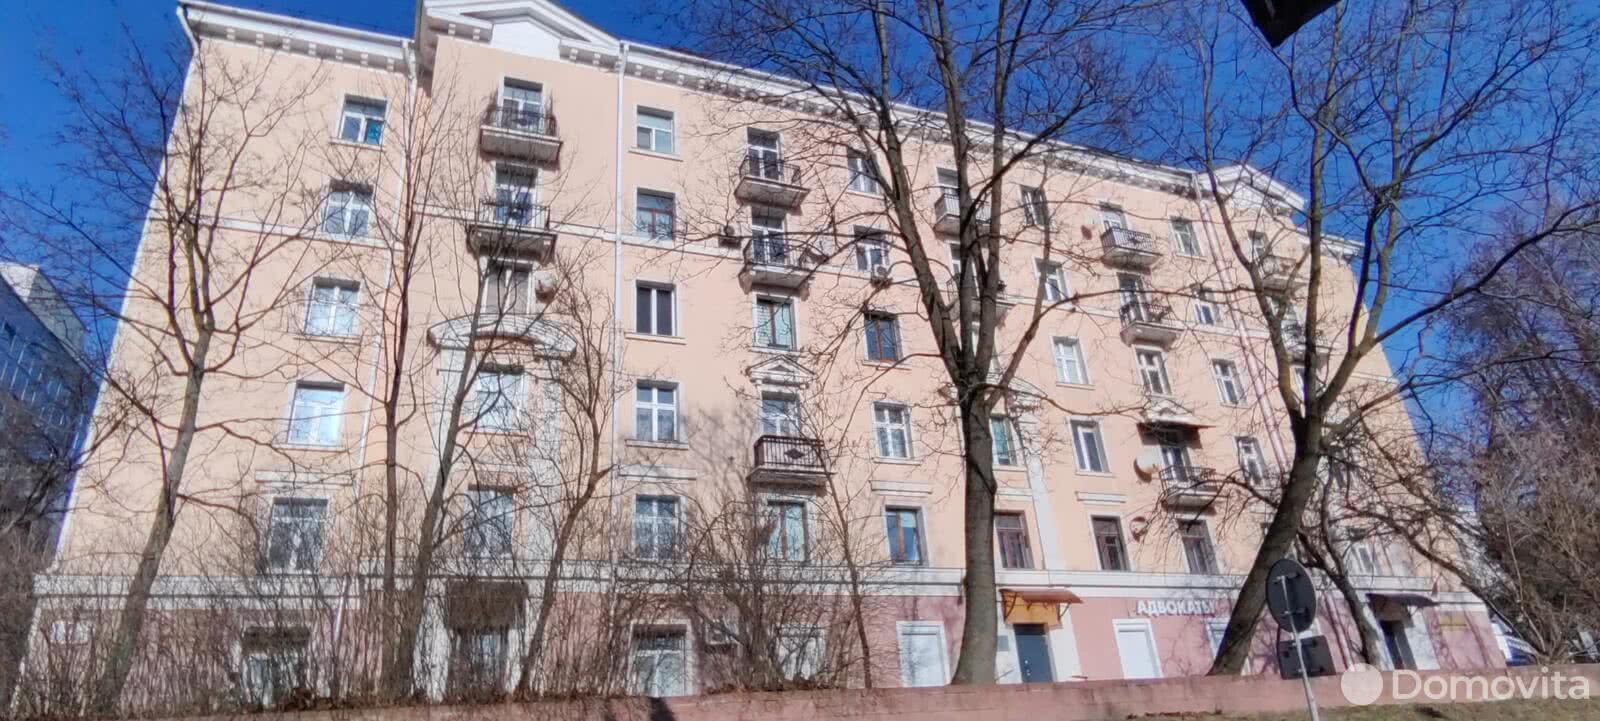 продажа квартиры, Минск, ул. Ульяновская, д. 4